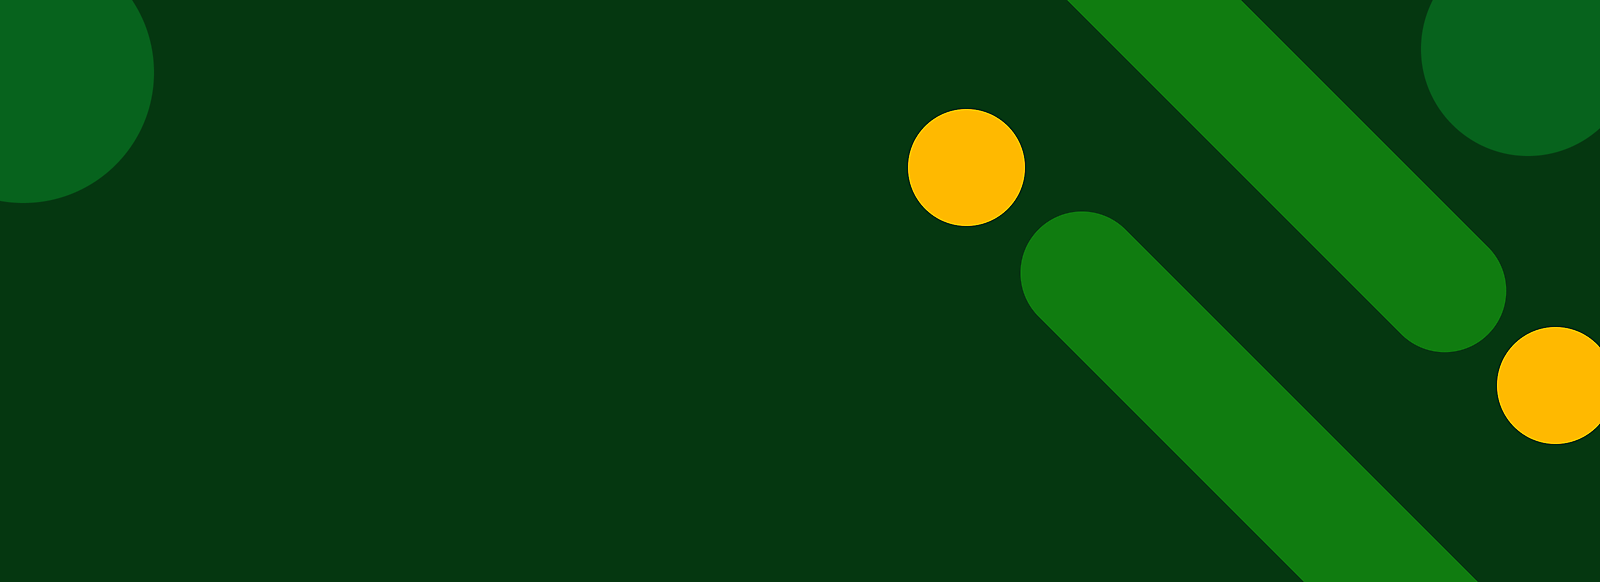 Fondo verde abstracto con puntos amarillos y franjas verdes diagonales.